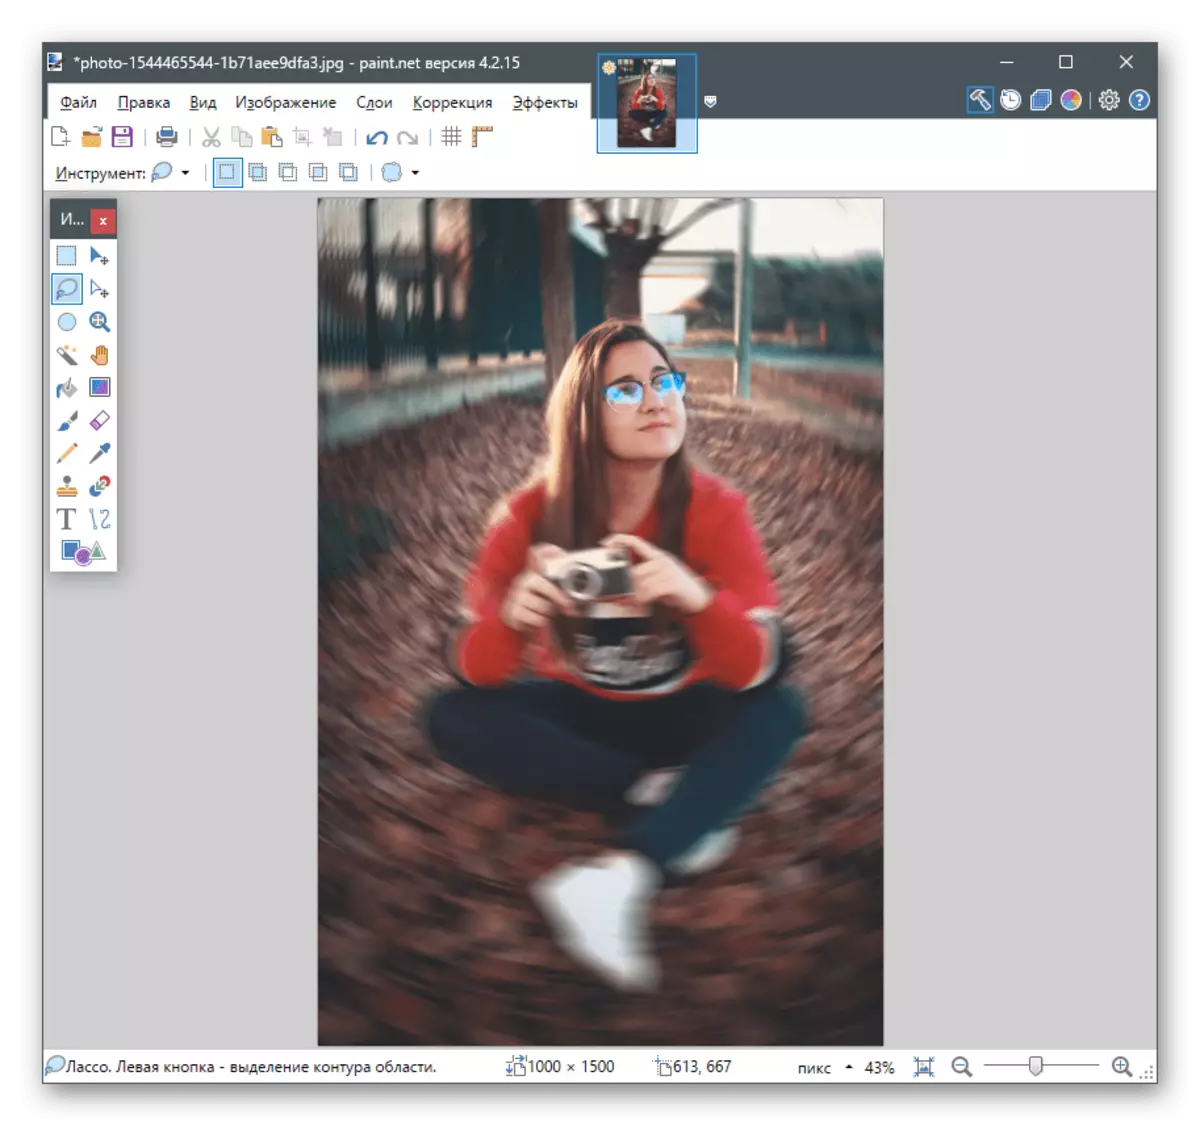 نتیجه استفاده از فیلتر برای تار شدن پس زمینه پشت در عکس در Paint.NET